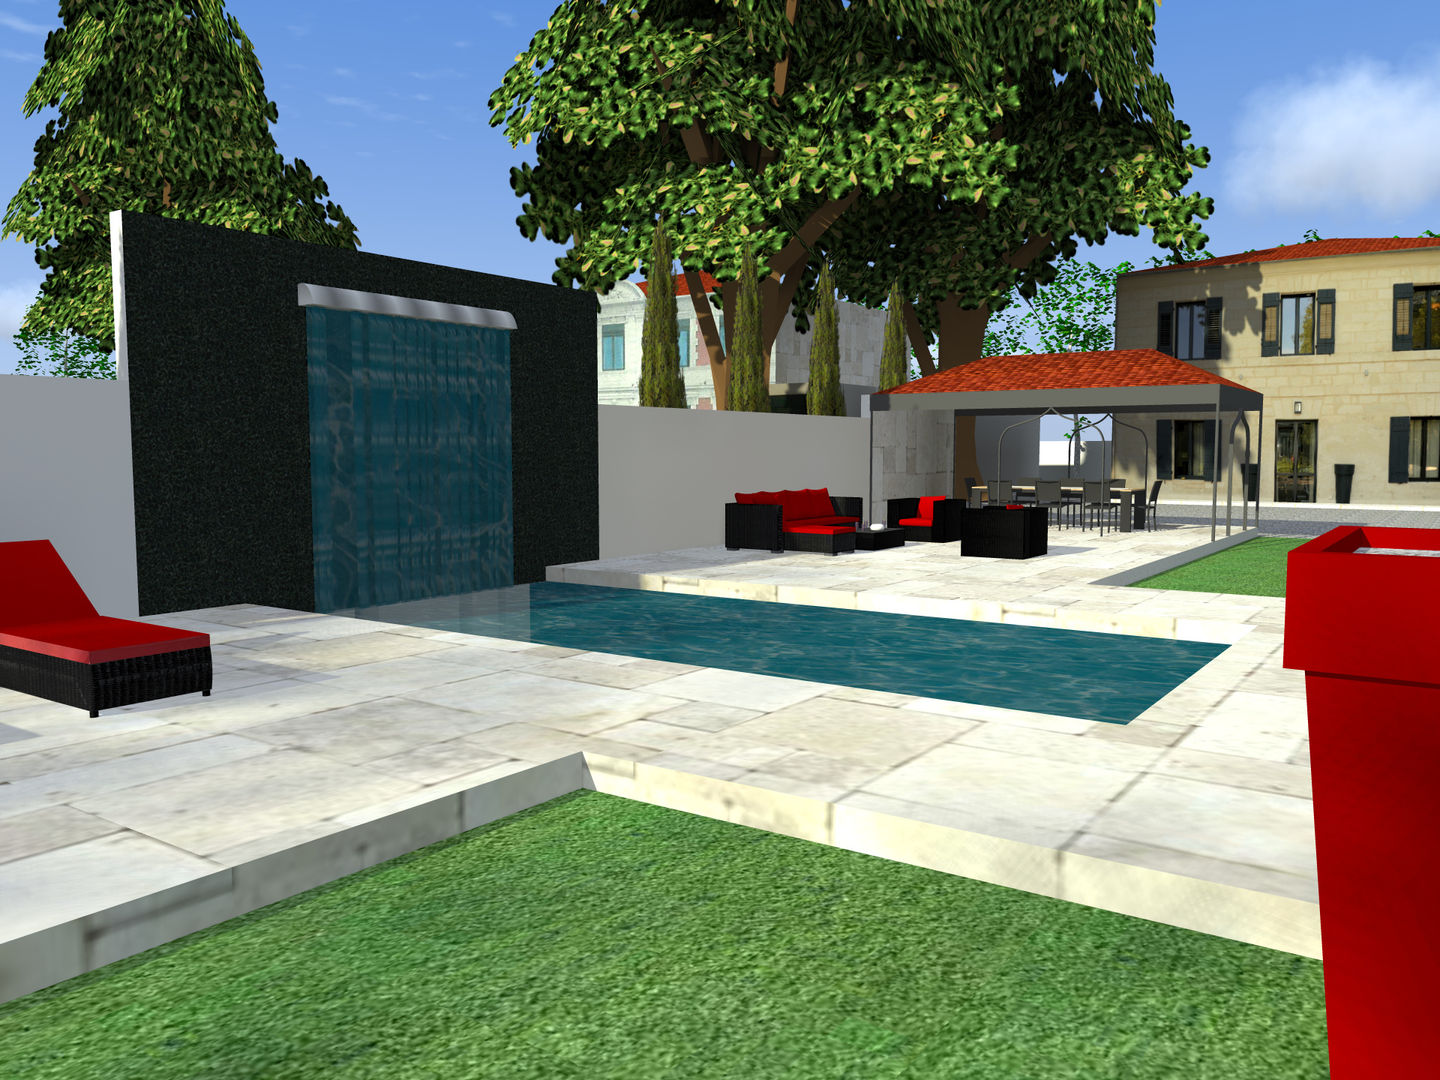 Création d'une piscine en 2 espaces distincts, AZ Createur d'intérieur AZ Createur d'intérieur Hồ bơi phong cách hiện đại